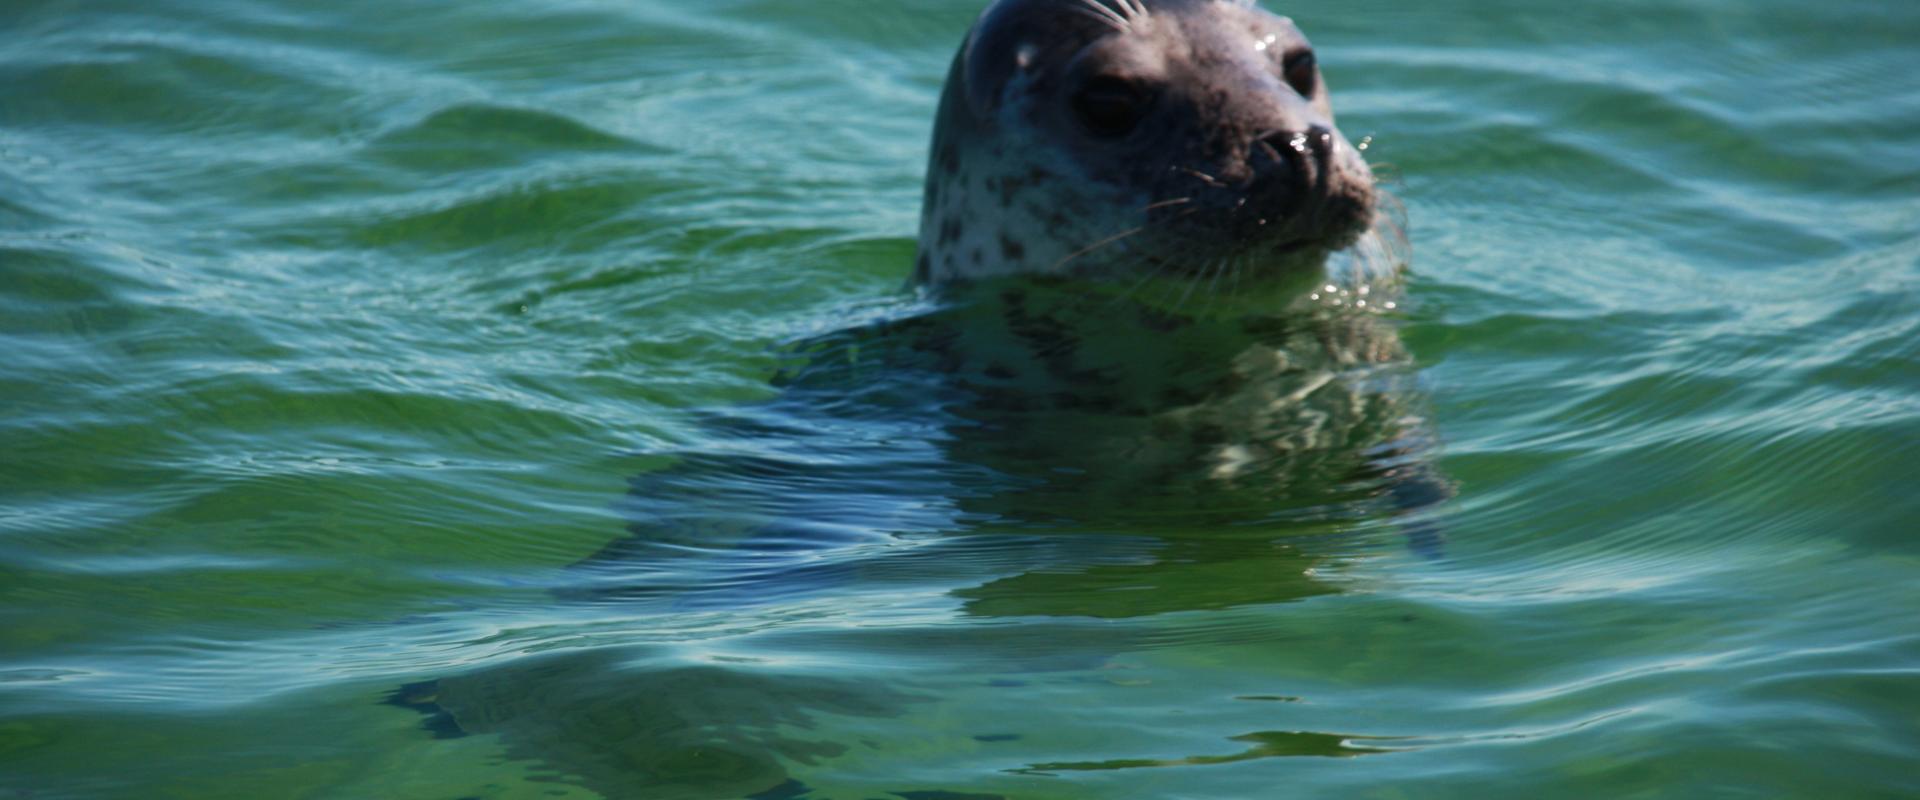 Seal observation trip in Hiiumaa